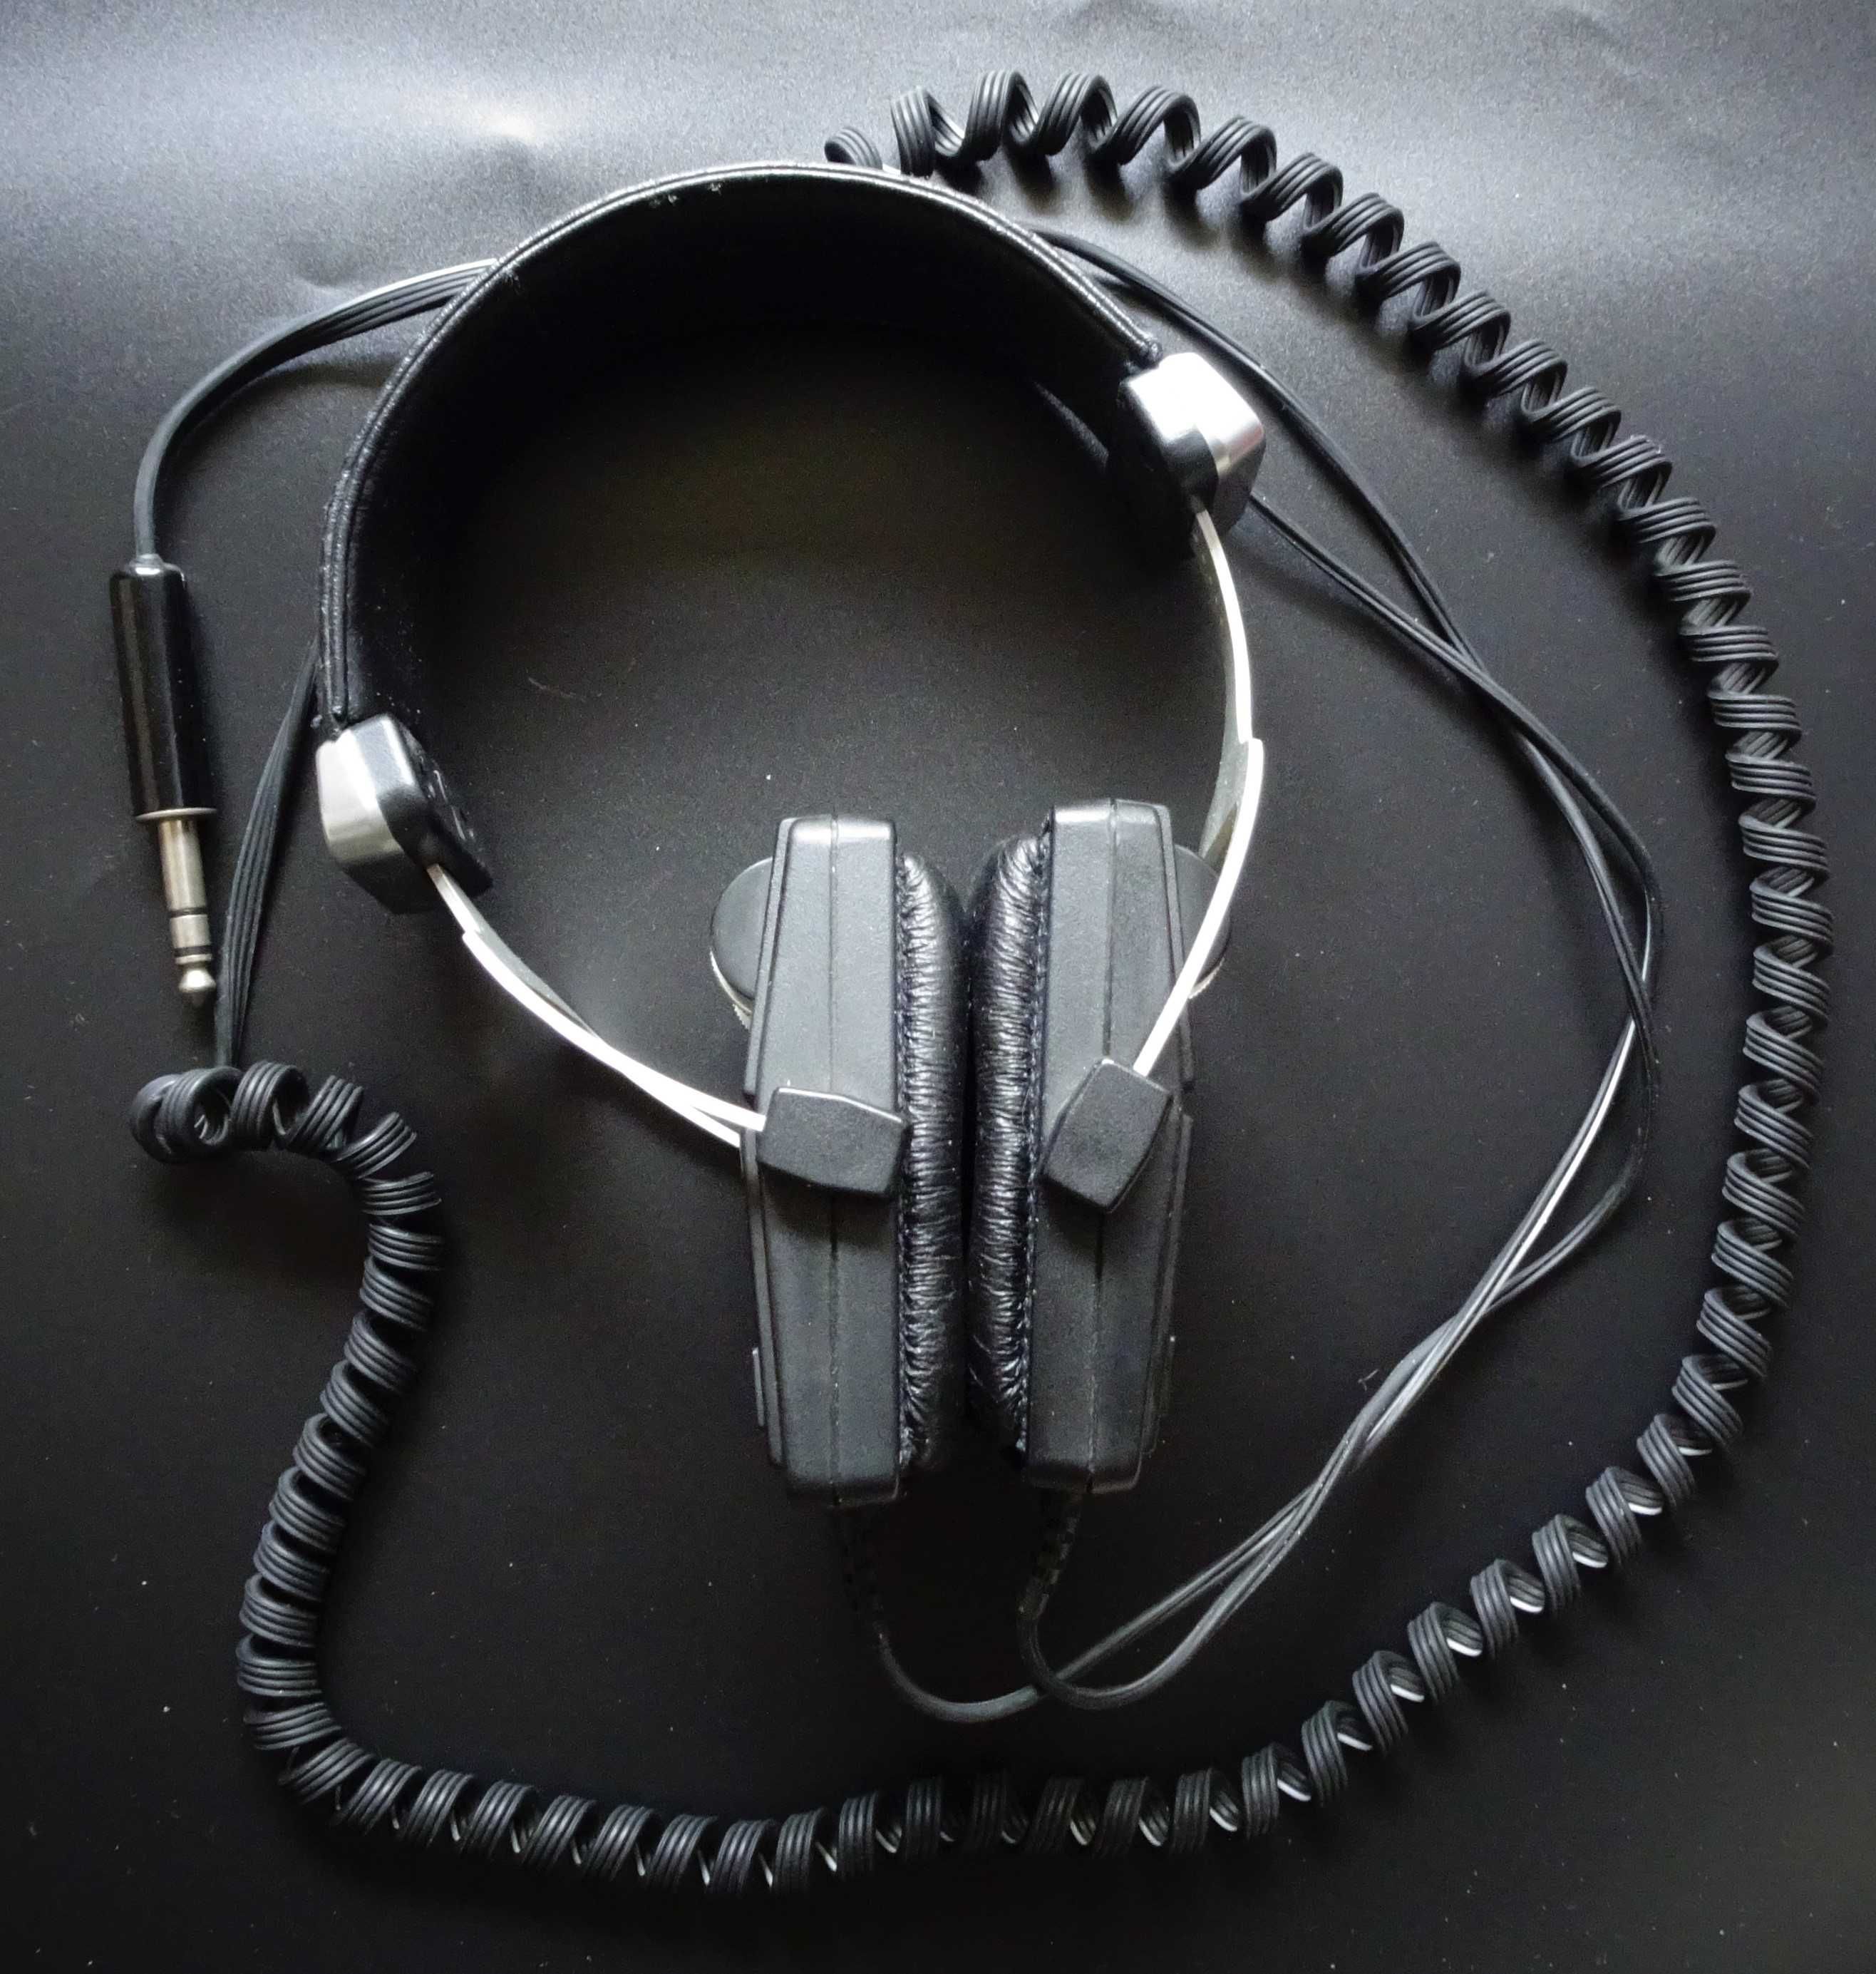 Słuchawki WATSON mod.930 ortodynamiczne